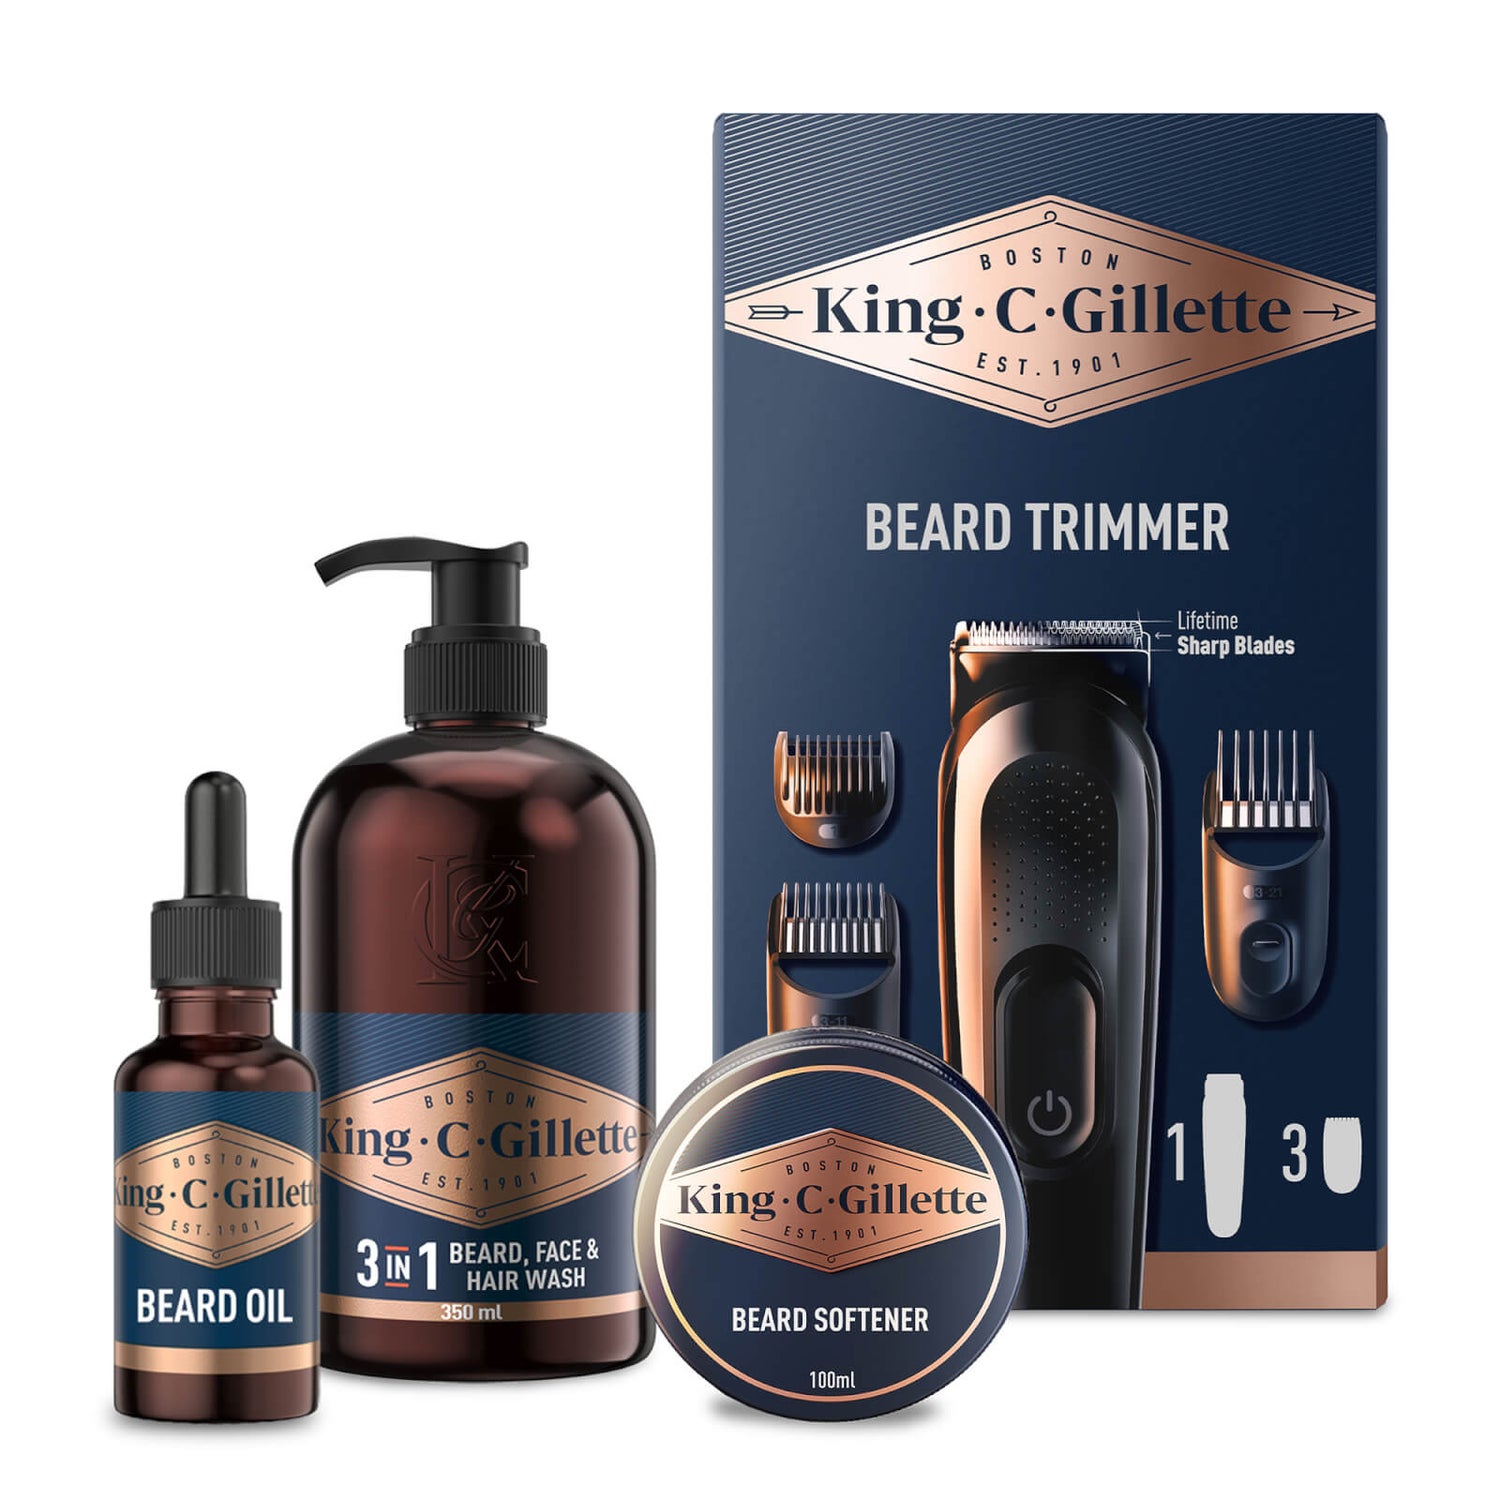 King C. Gillette Beard Trimmer & Beard Care Kit